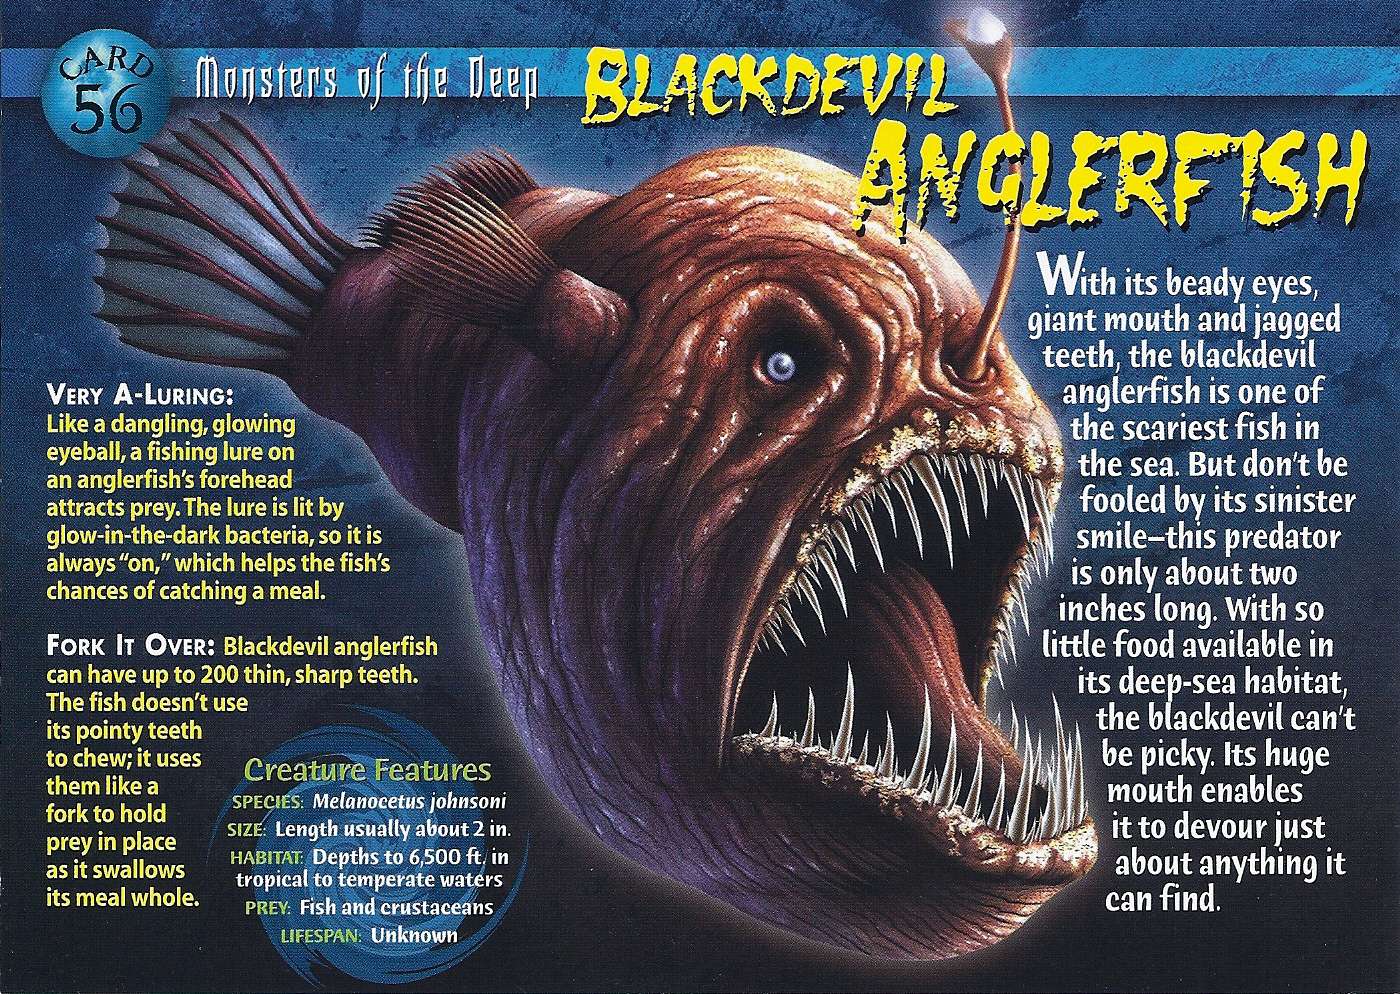 Blackdevil Anglerfish, Weird n' Wild Creatures Wiki